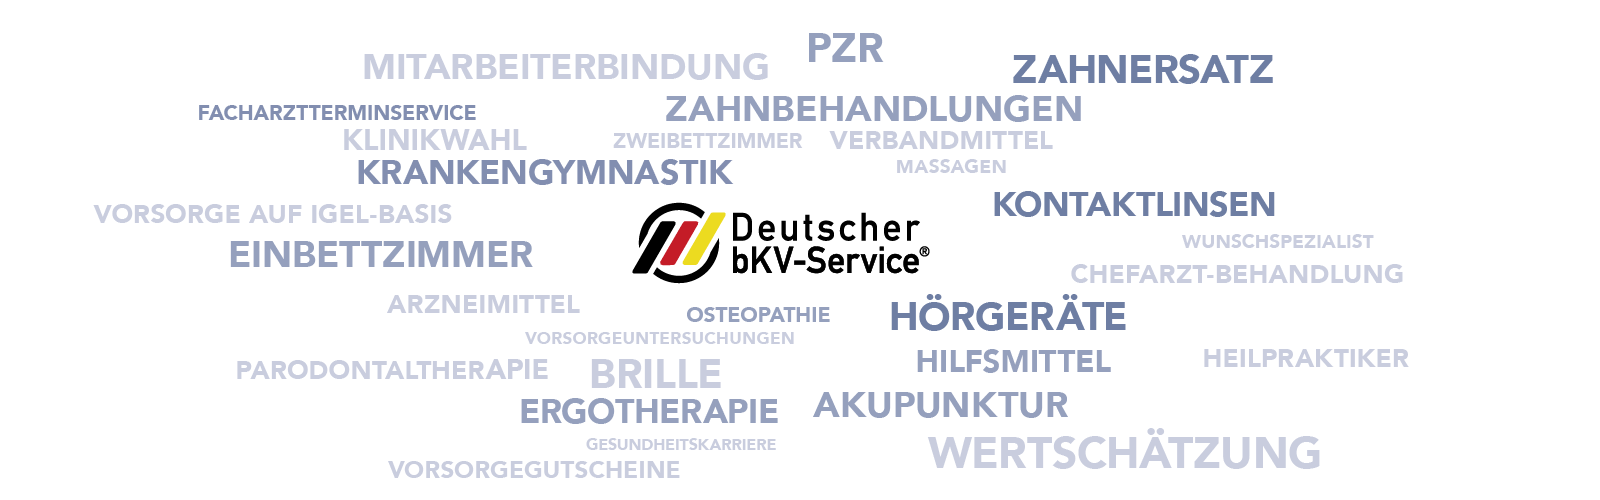 Wortwolke Deutscher bKV-Serive, darum gruppieren sich Wörter Zahnbehandlung, Mitarbeiterbindung, PZR, Einbettzimmer, Wertschätzung, Brille und weitere